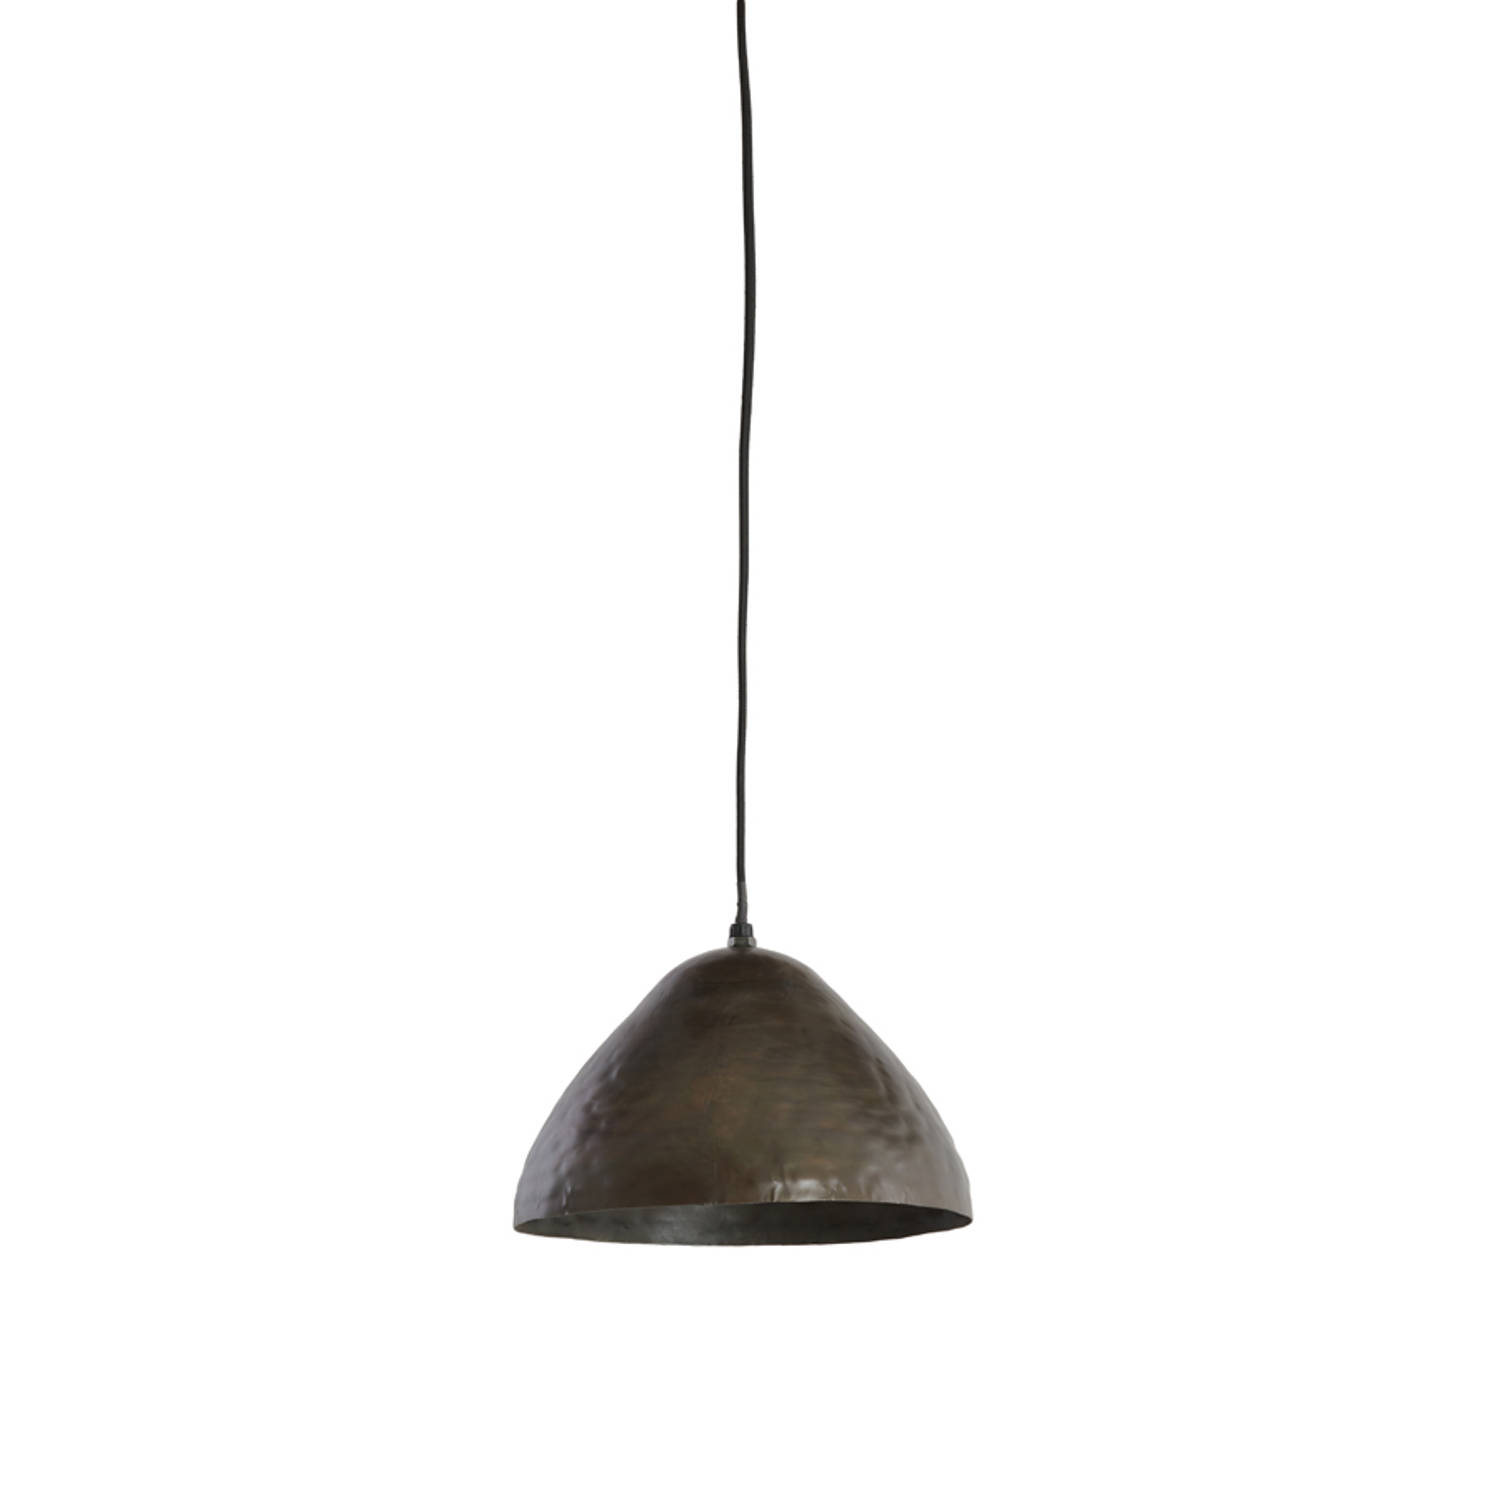 Light & Living - Hanglamp ELIMO - Ø25x15cm - Bruin